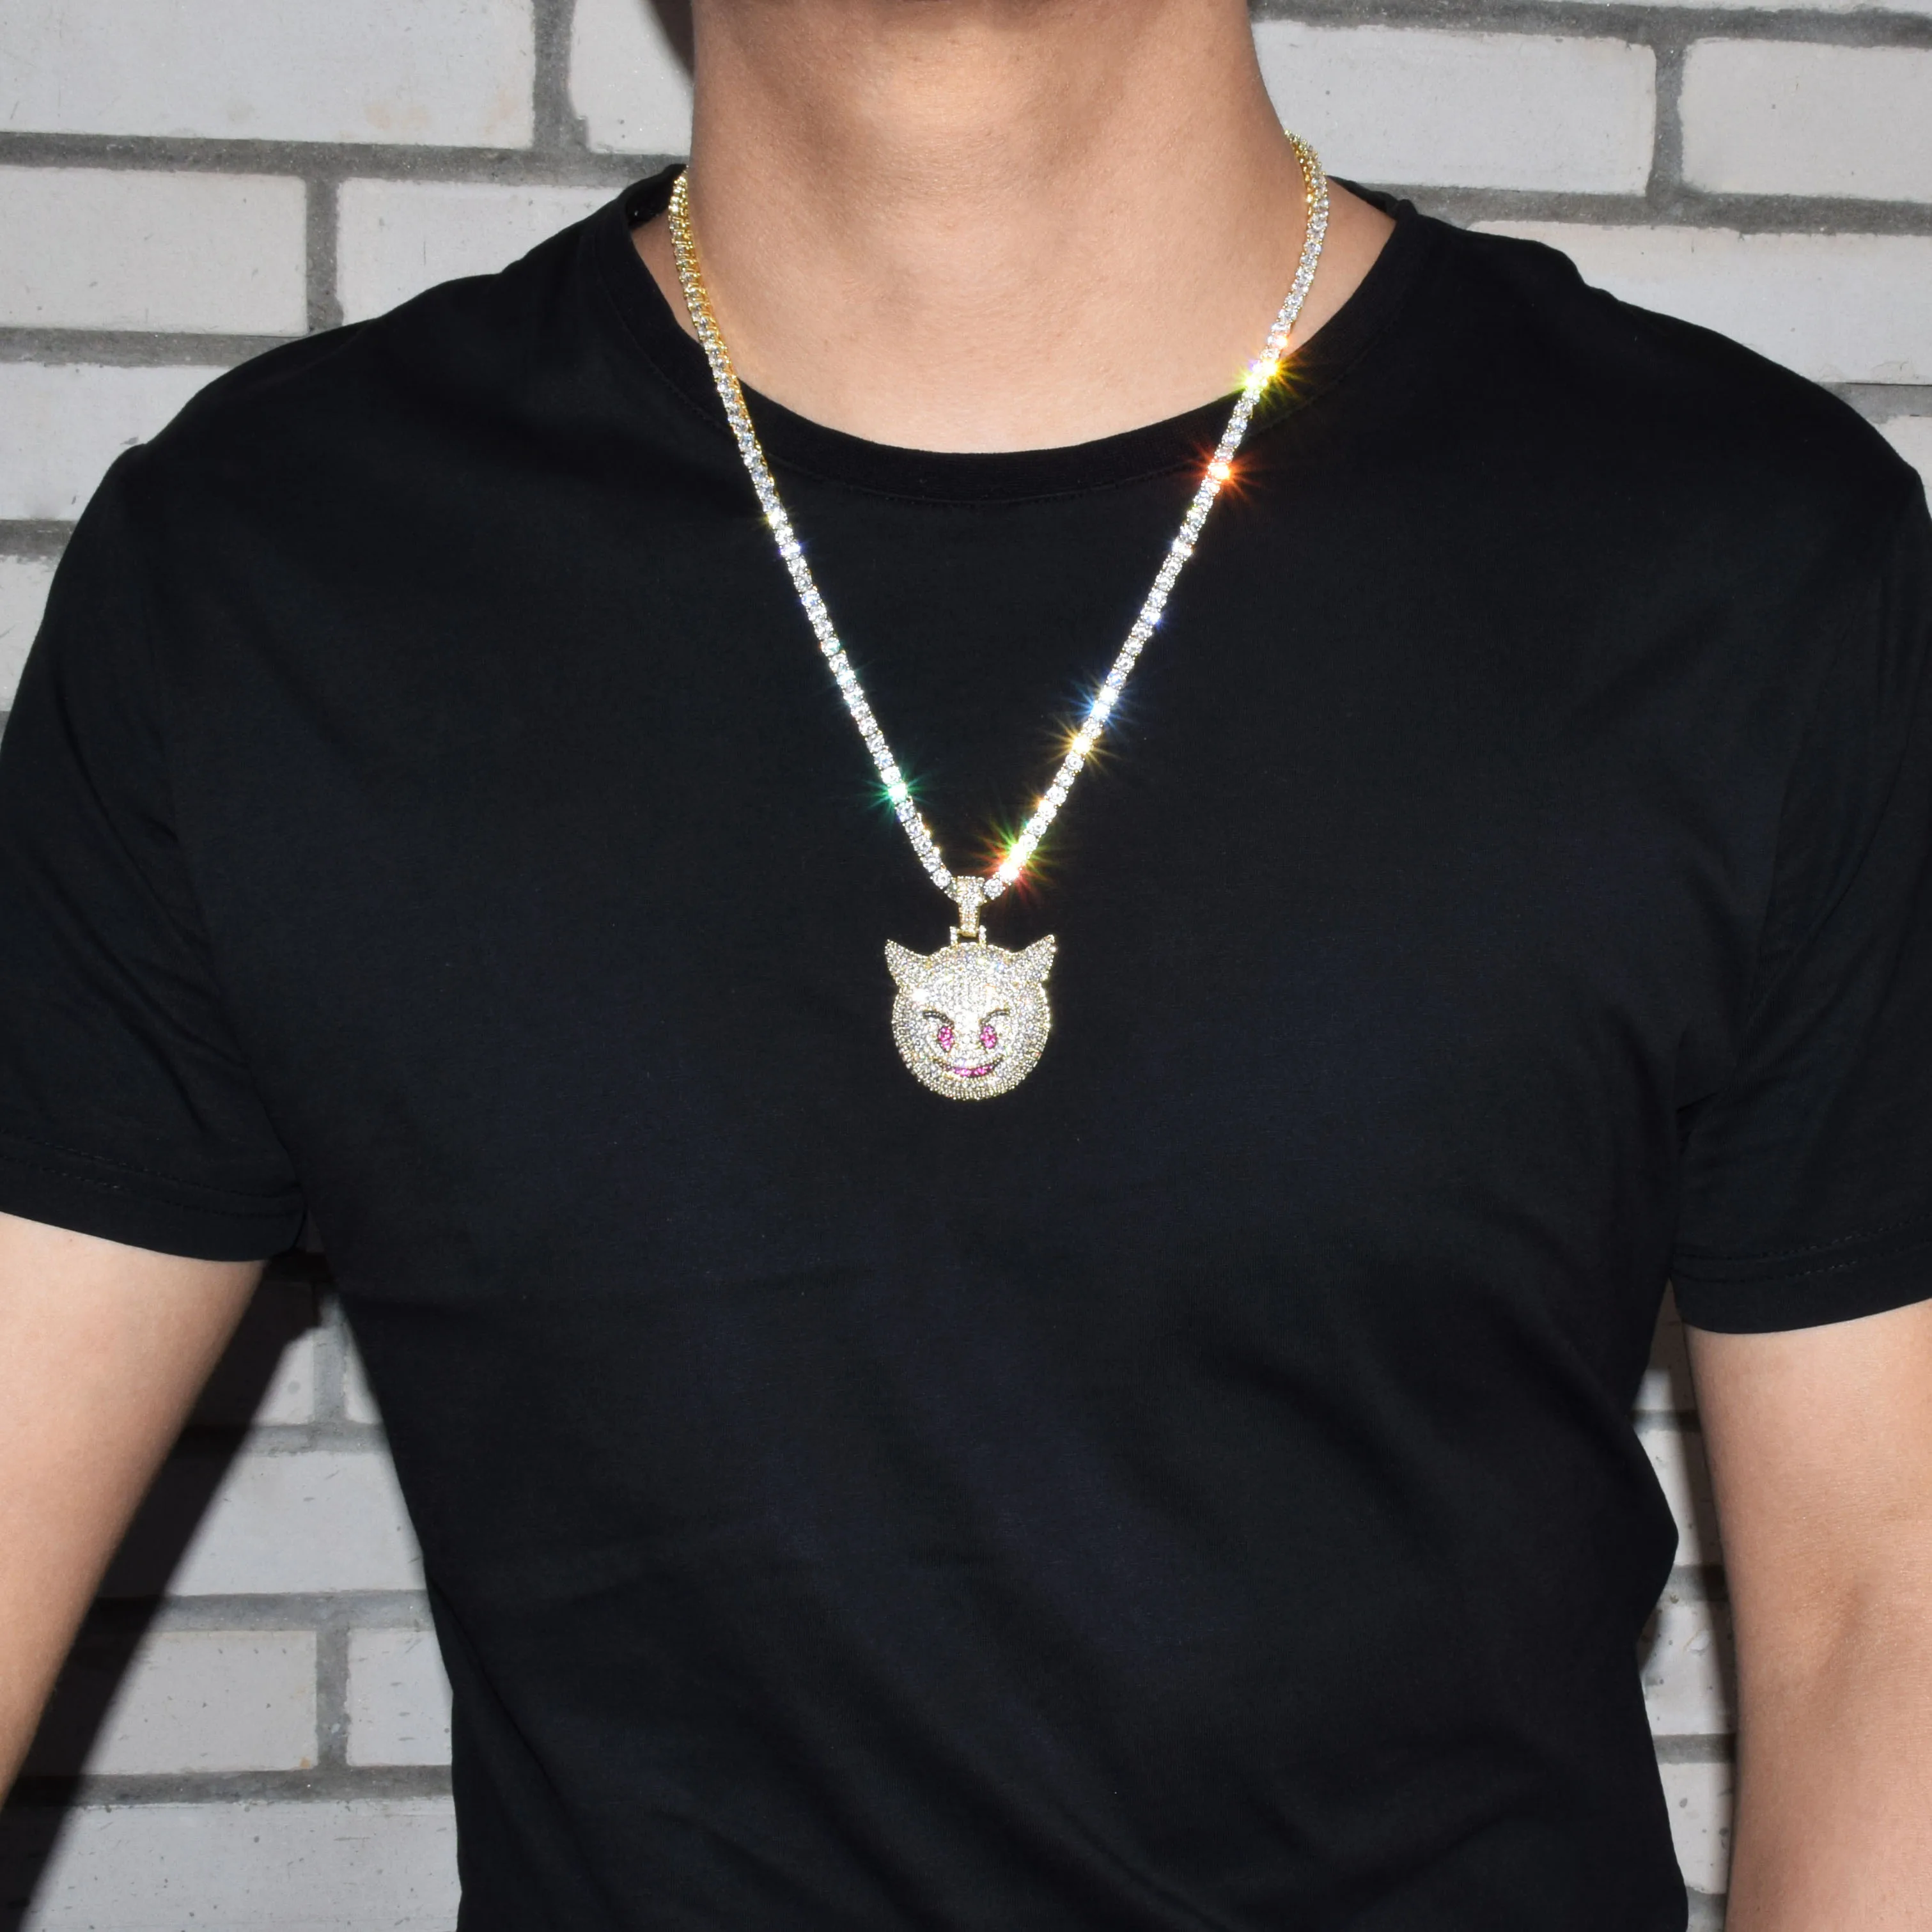 Demon Evil Expression ожерелье и кулон с теннисной цепочкой Золото Серебро Bling Циркон Мода хип хоп Рок улица ювелирные изделия